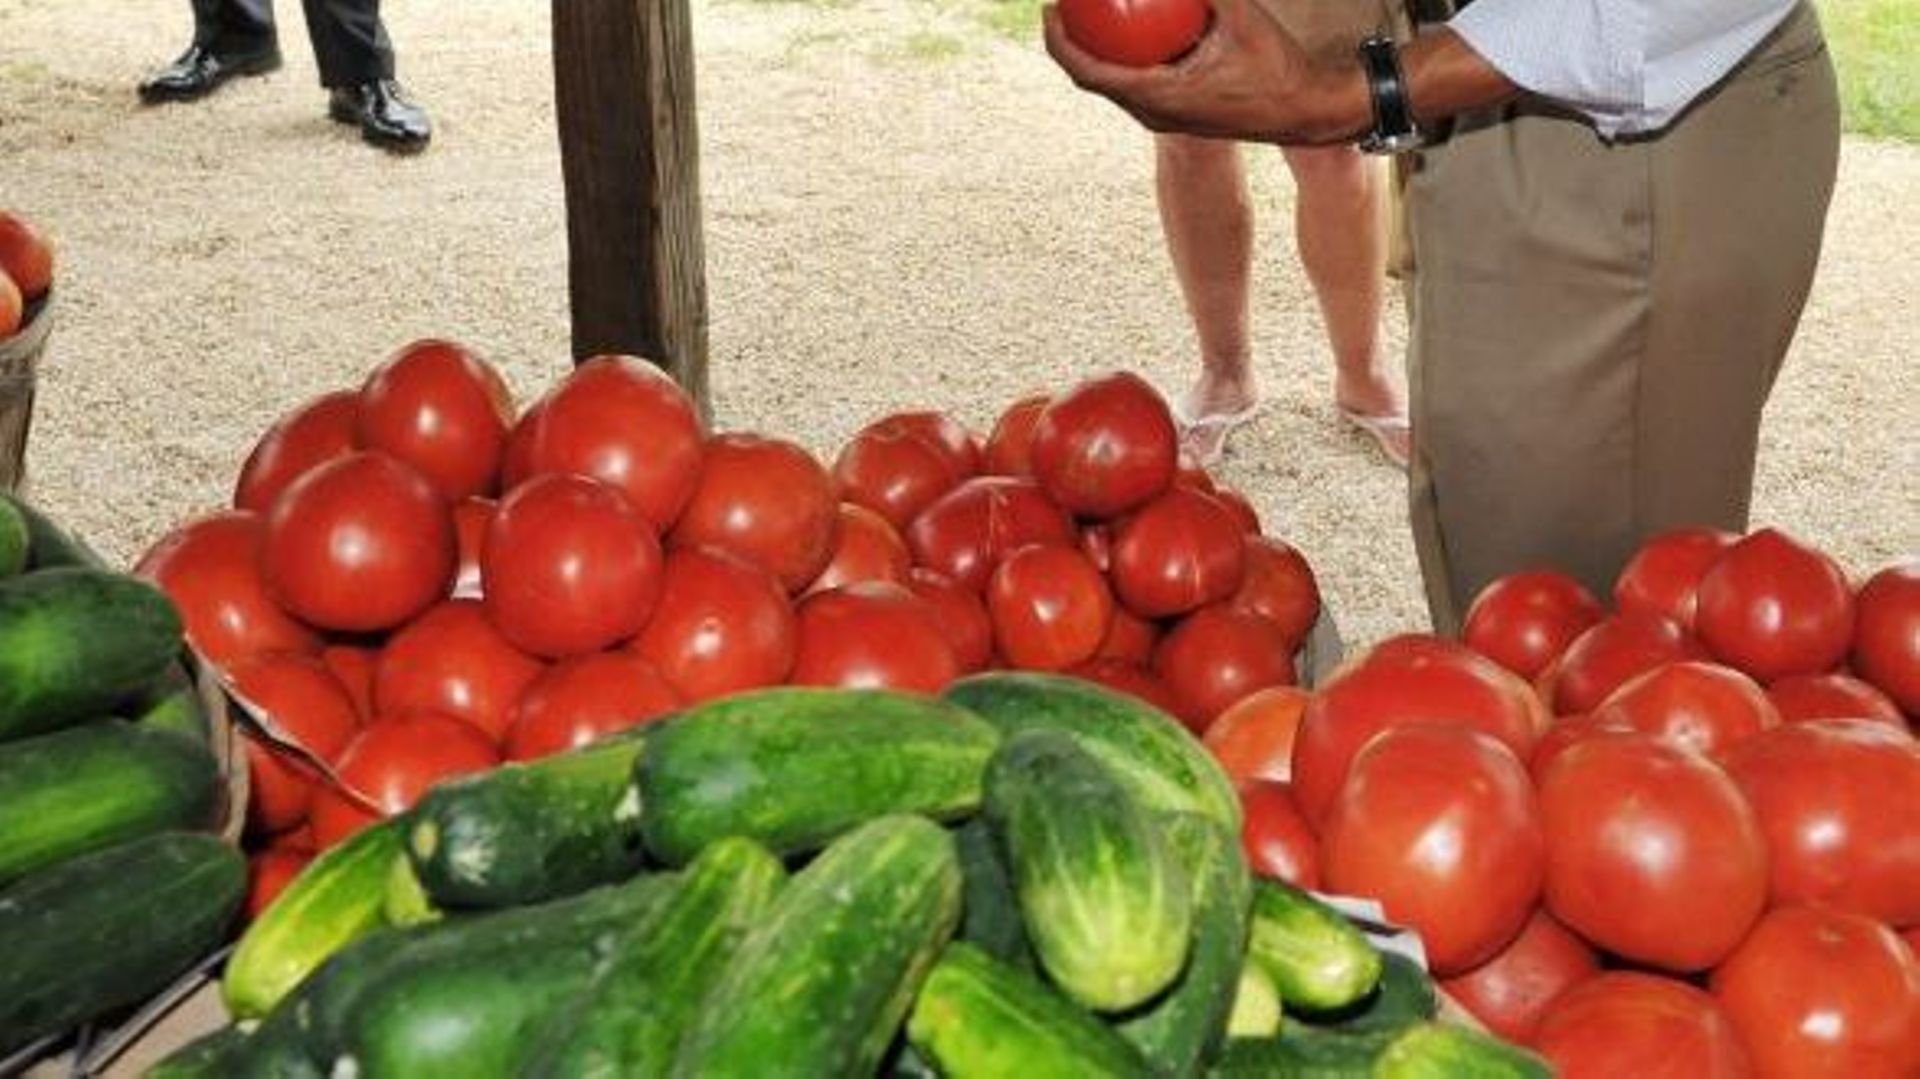 Les tomates, riches en lycopène, réduiraient le risque d'attaque cérébrale